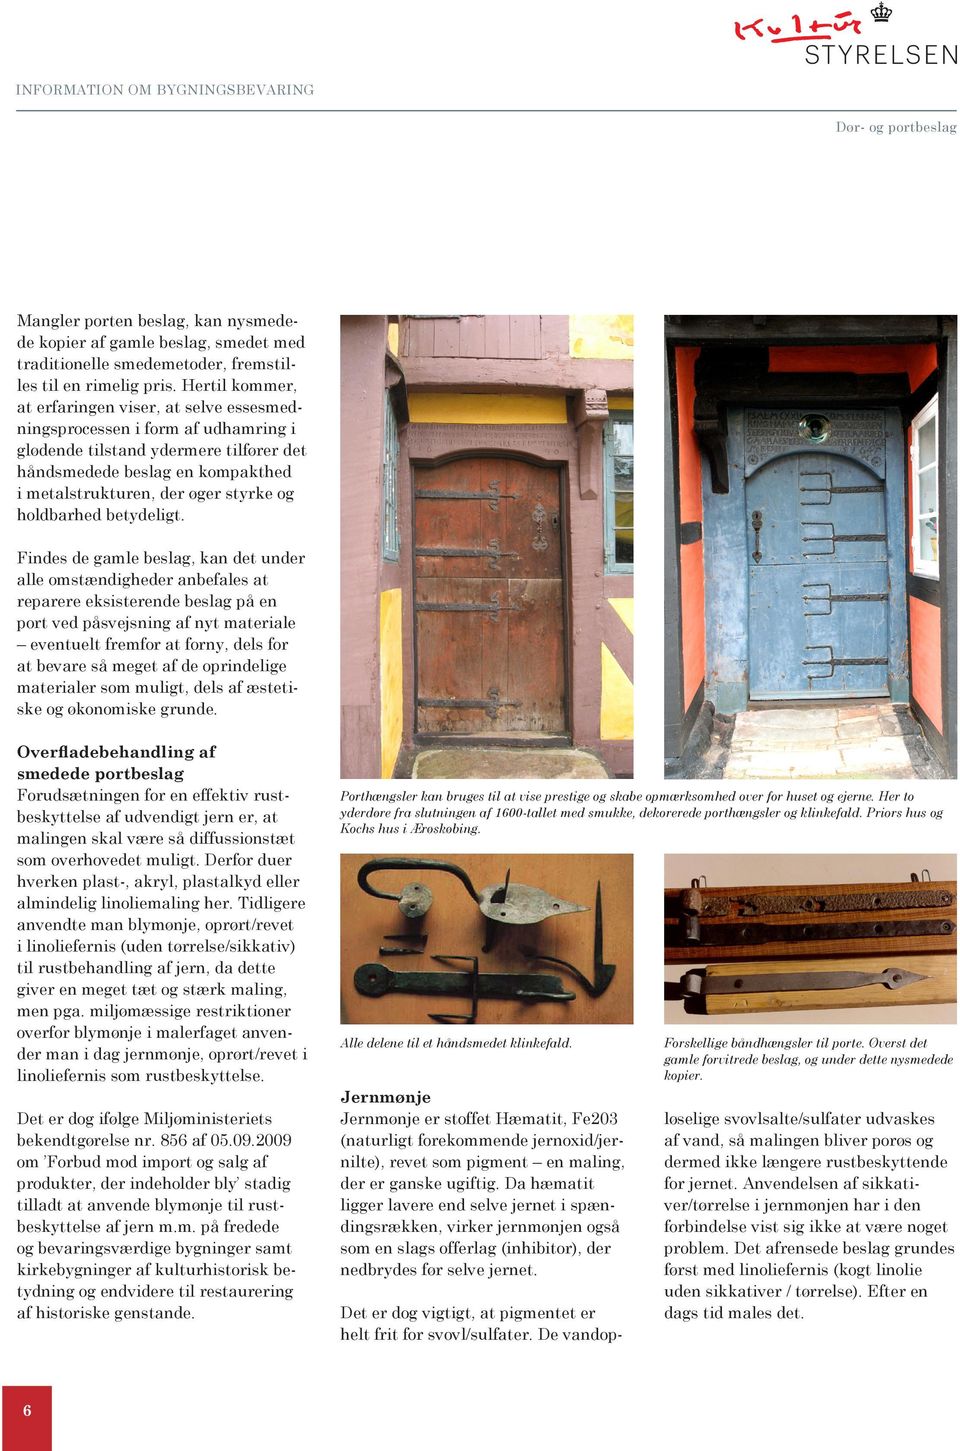 En af de ældste hængseltyper på døre i beboelseshuse er de såkaldte  bukkehornshængsler, - PDF Gratis download